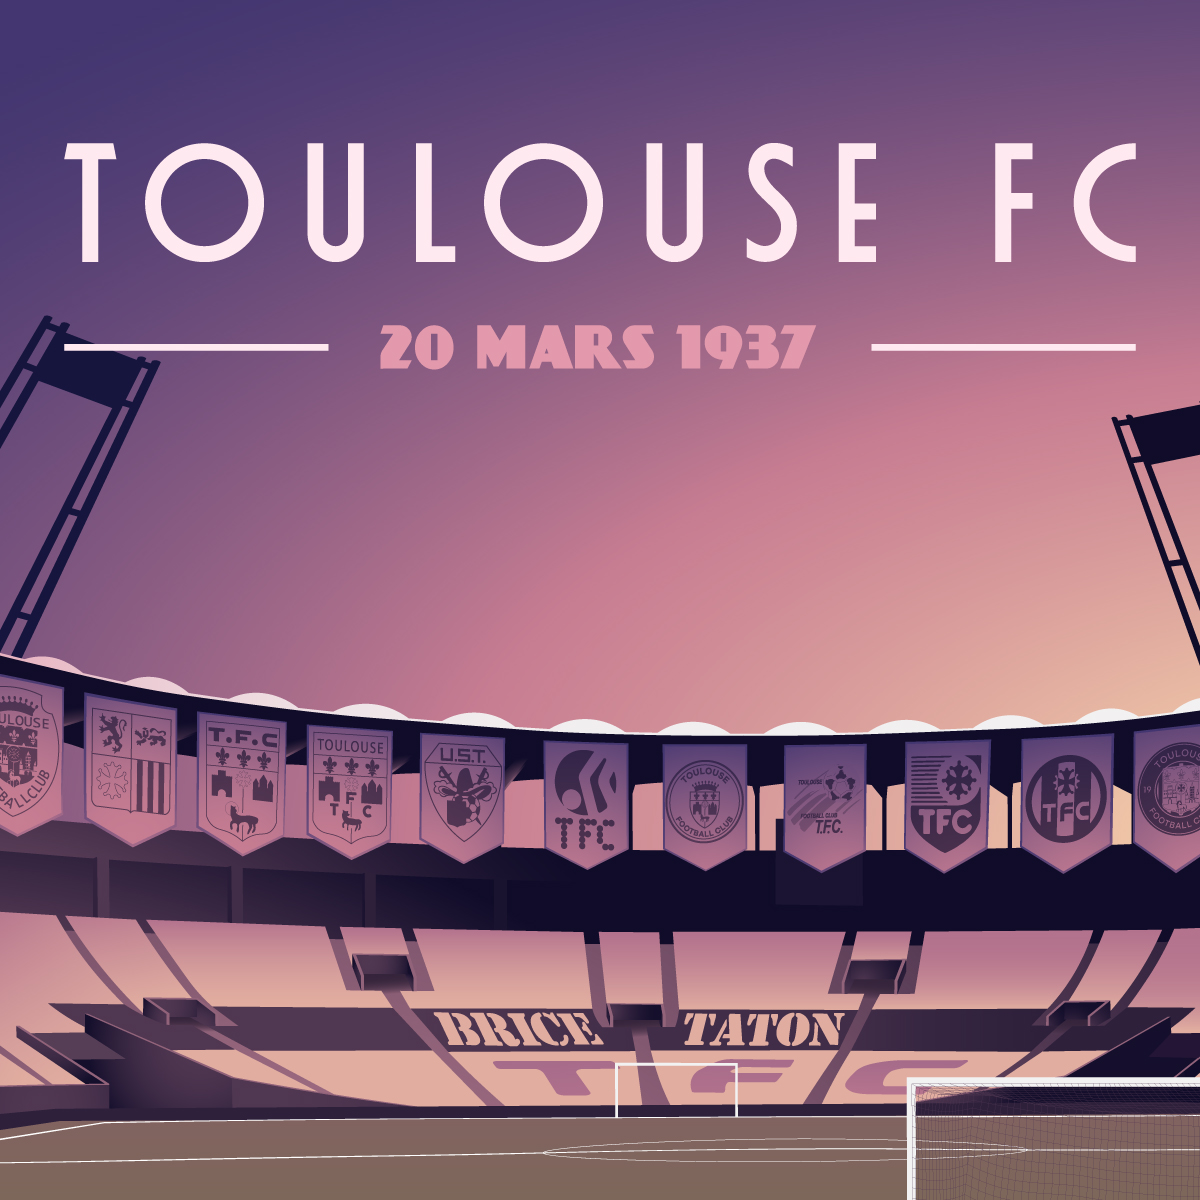 Toulouse FC on X: Le 20 mars 1937 𝗻𝗮𝗶𝘀𝘀𝗮𝗶𝘁 𝗹𝗲 𝗧𝗼𝘂𝗹𝗼𝘂𝘀𝗲  𝗙𝗼𝗼𝘁𝗯𝗮𝗹𝗹 𝗖𝗹𝘂𝗯 au numéro 9 des arcades du Capitole !  Supportrices et supporters, à l'occasion de ce 84ème anniv